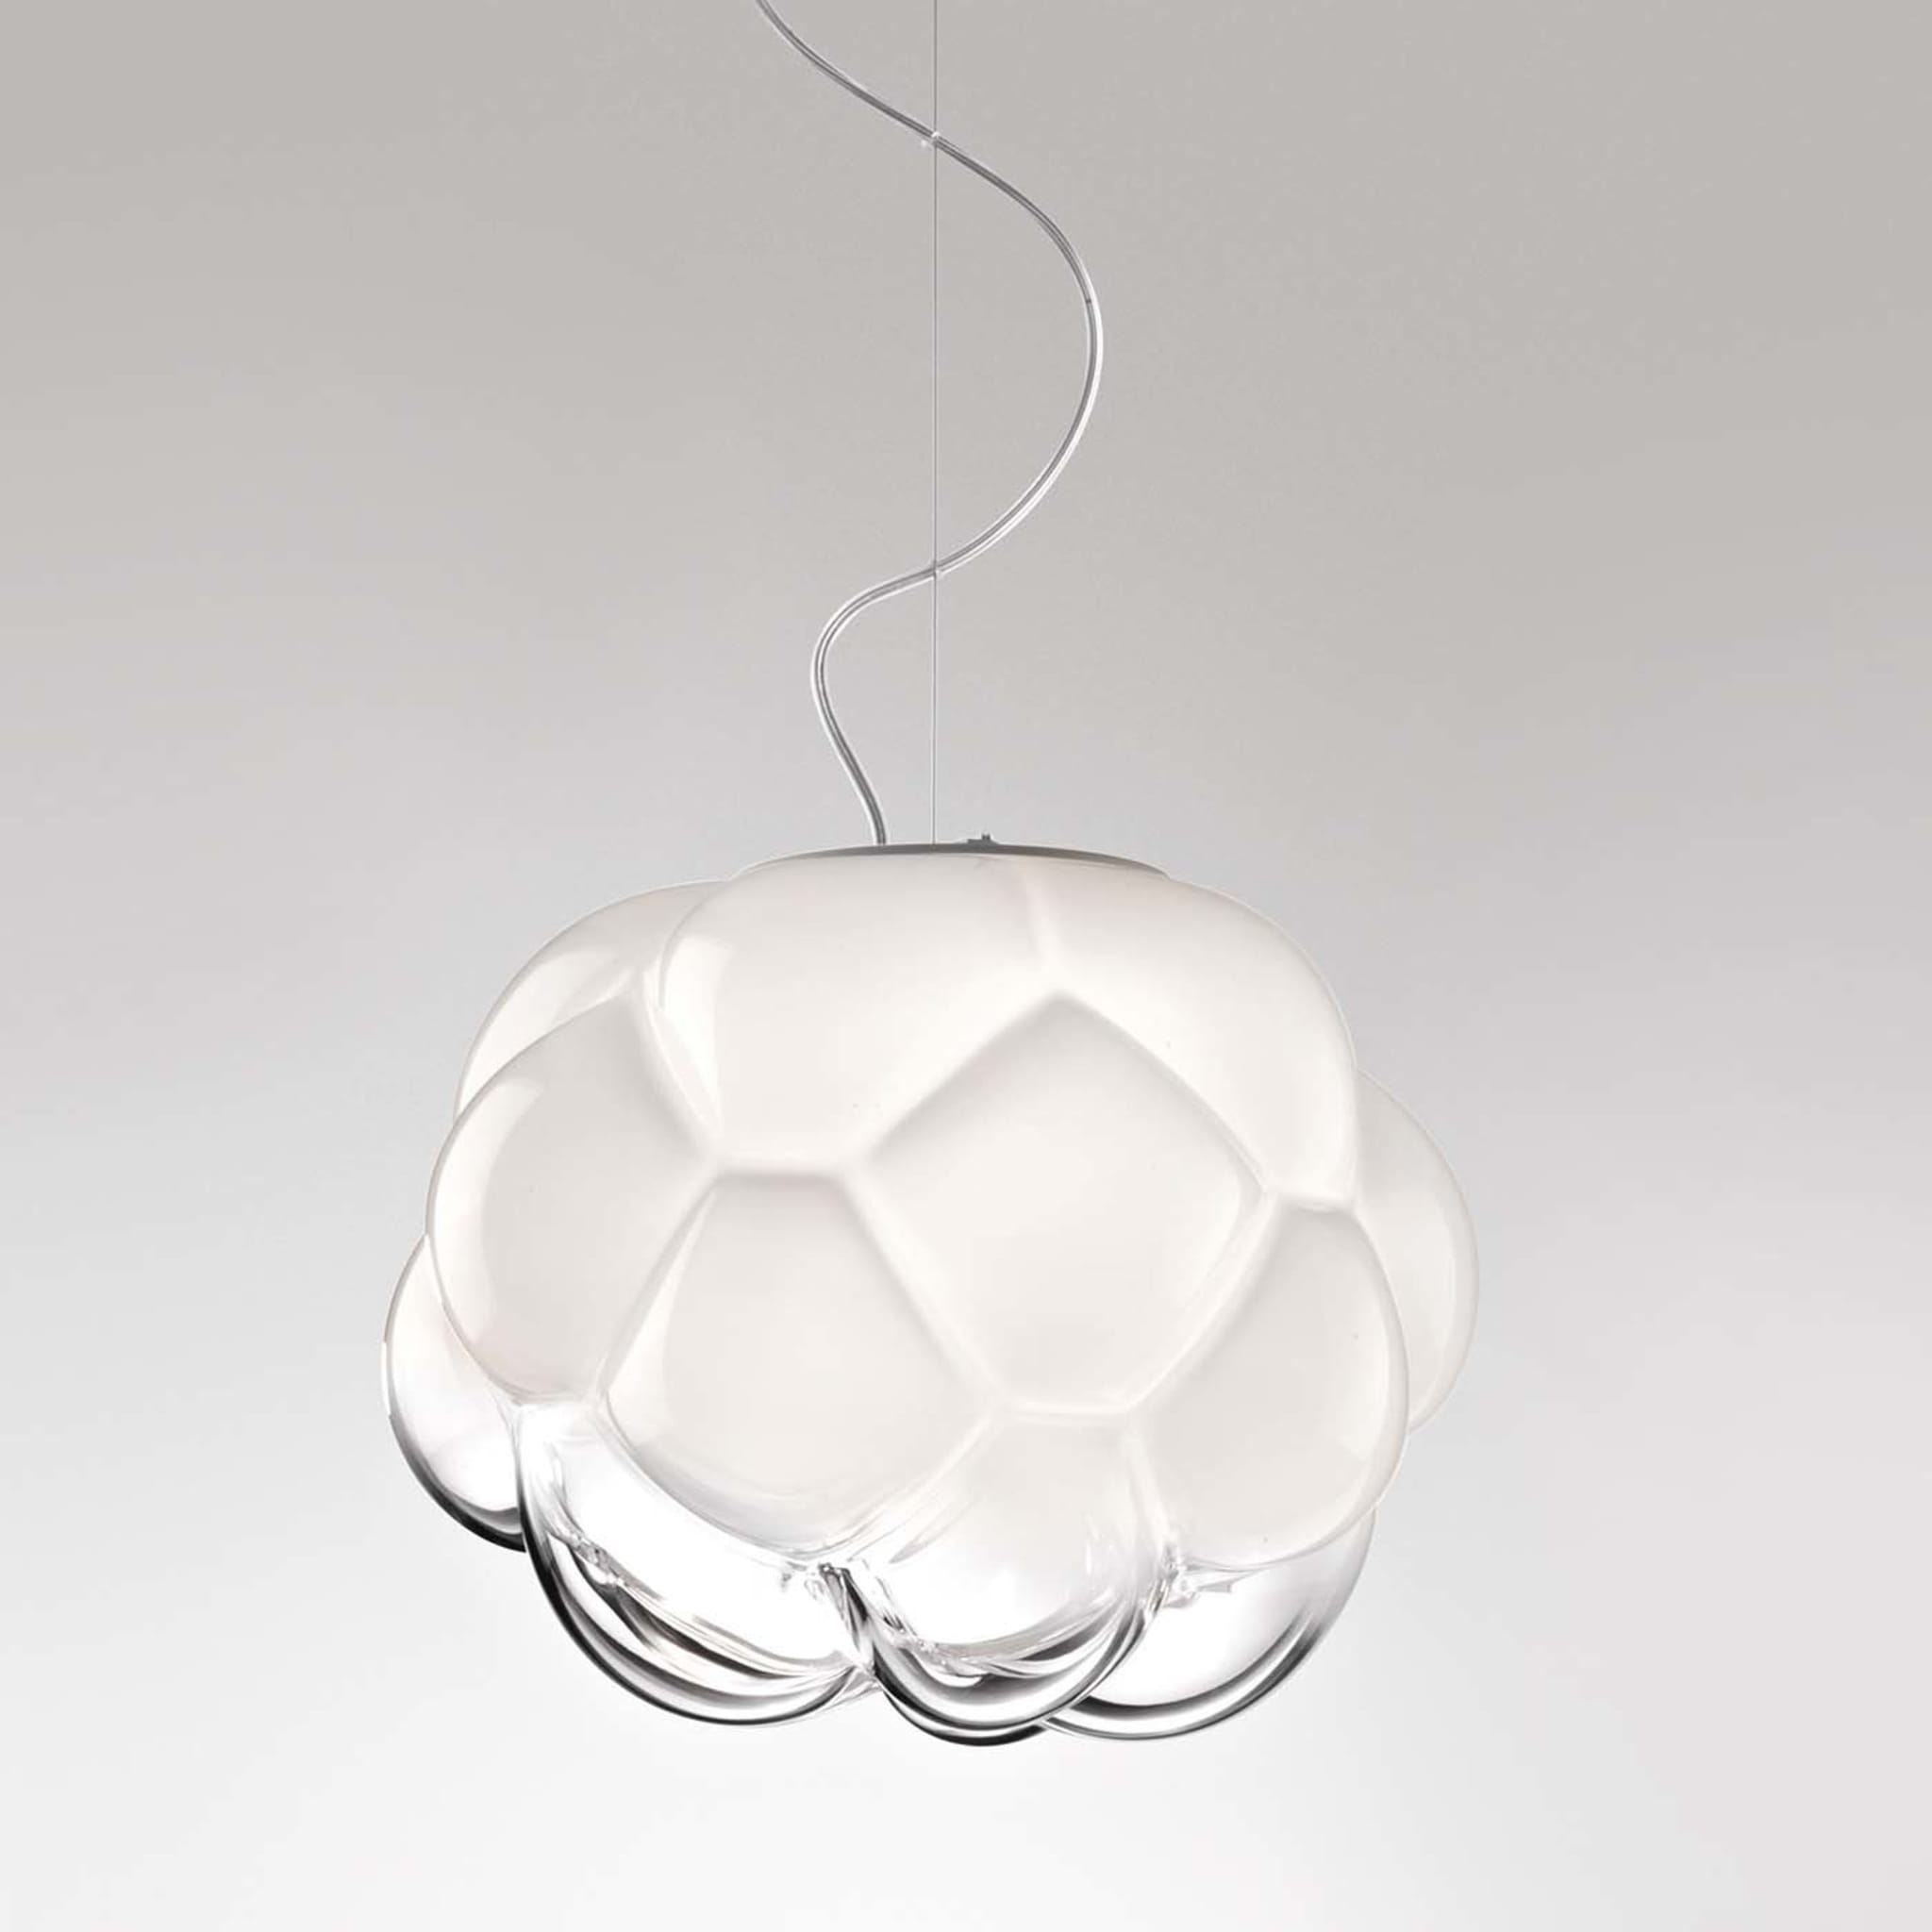 Cloudy Pendant Lamp by Mathieu Lehanneur - Alternative view 1